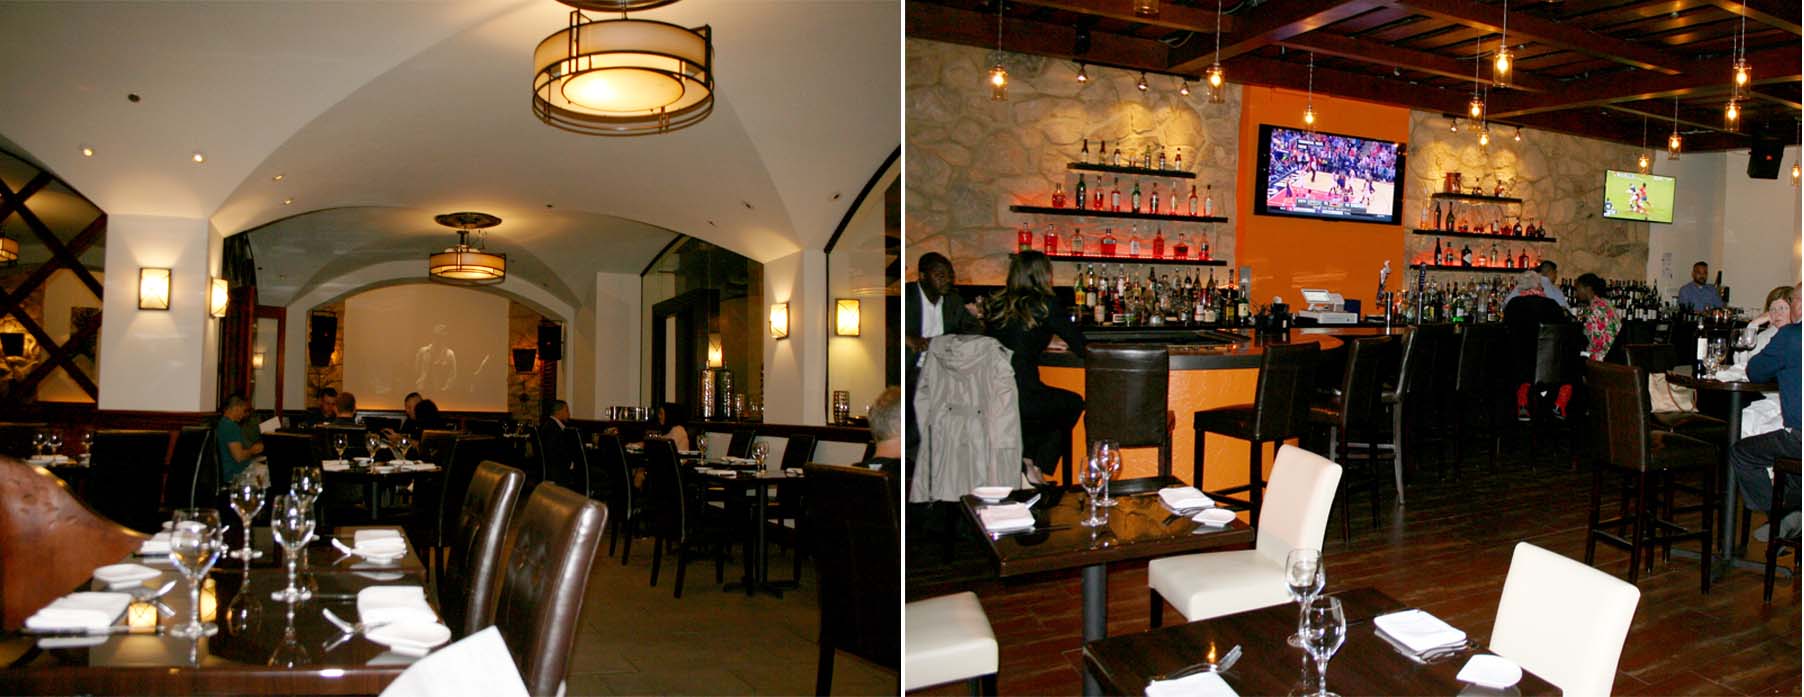 Noelia's dining room (left) and bar area still has an Italian feel. (Photos: Mark Heckathorn/DC on Heels)